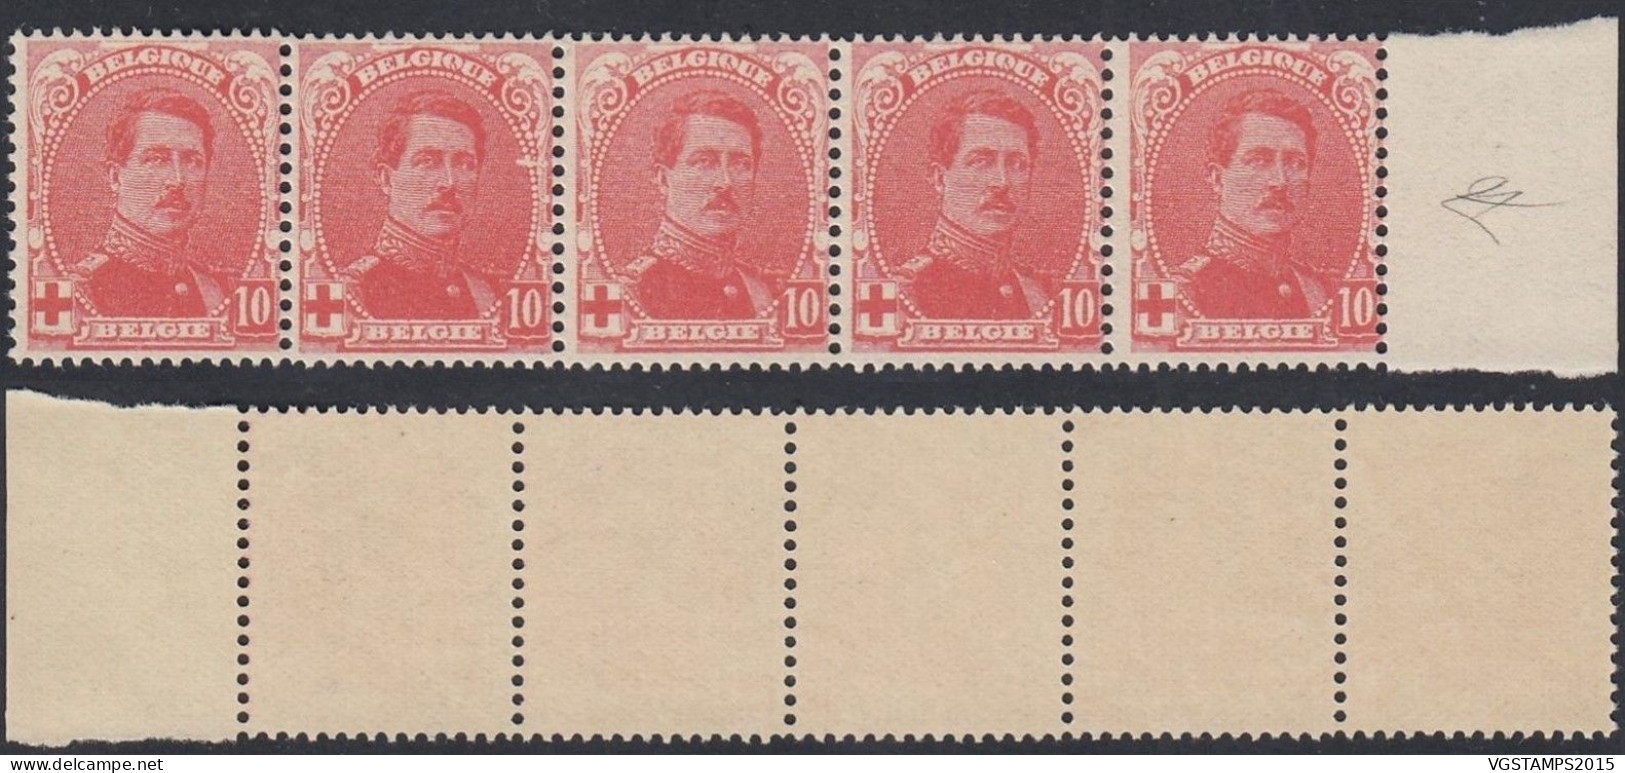 Belgique 1914 - Timbres Neufs. Nr.: 130 V. Bande De 5 Timbres................ (EB) AR-02046 - 1914-1915 Croce Rossa